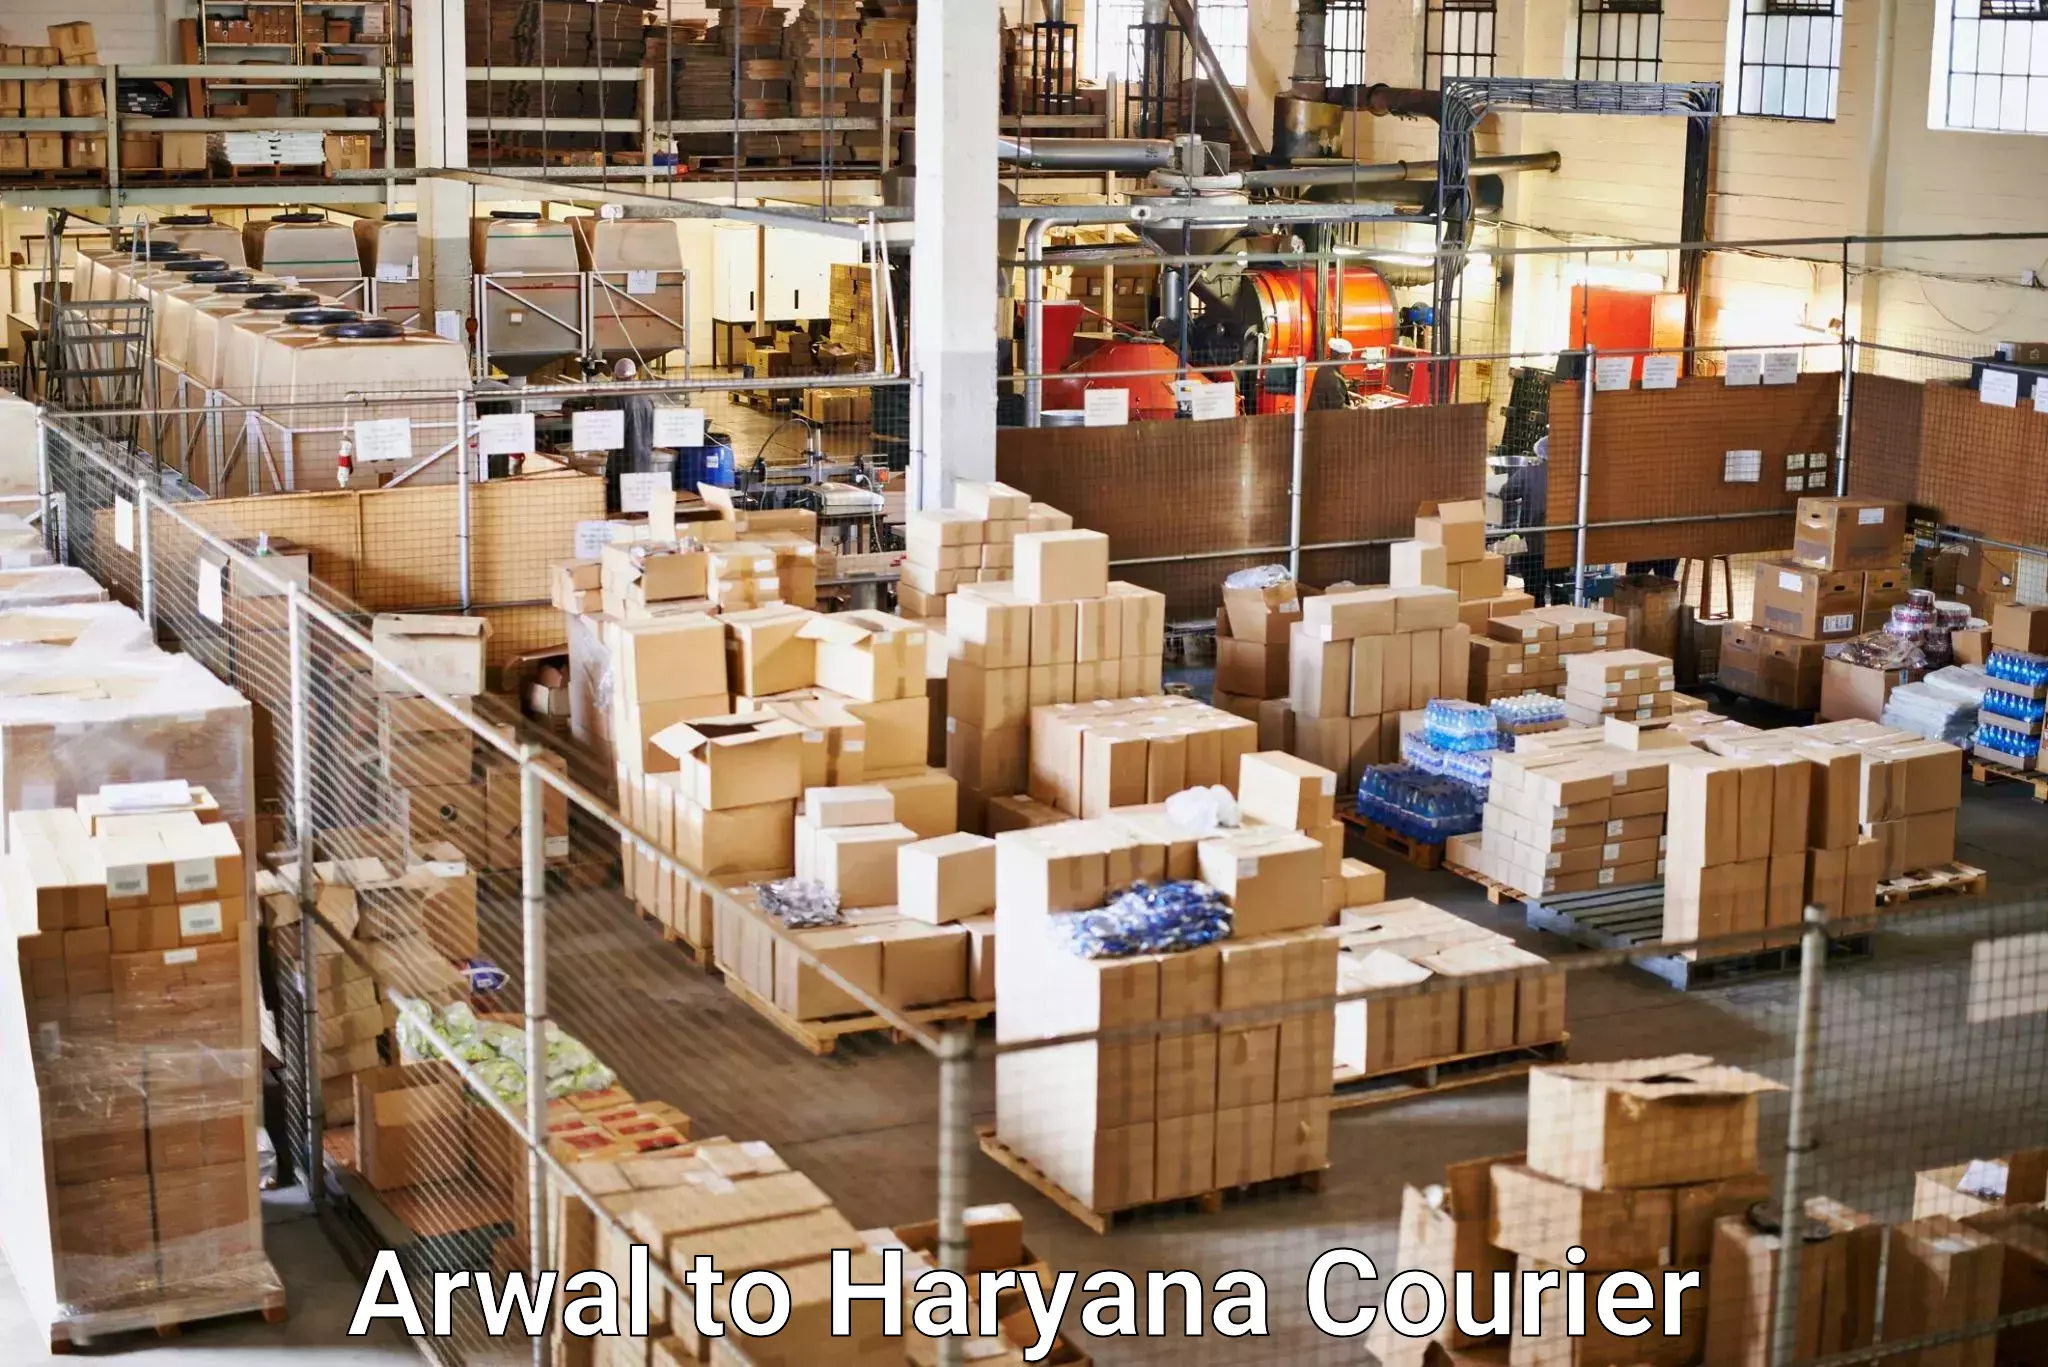 Global logistics network Arwal to Bhuna